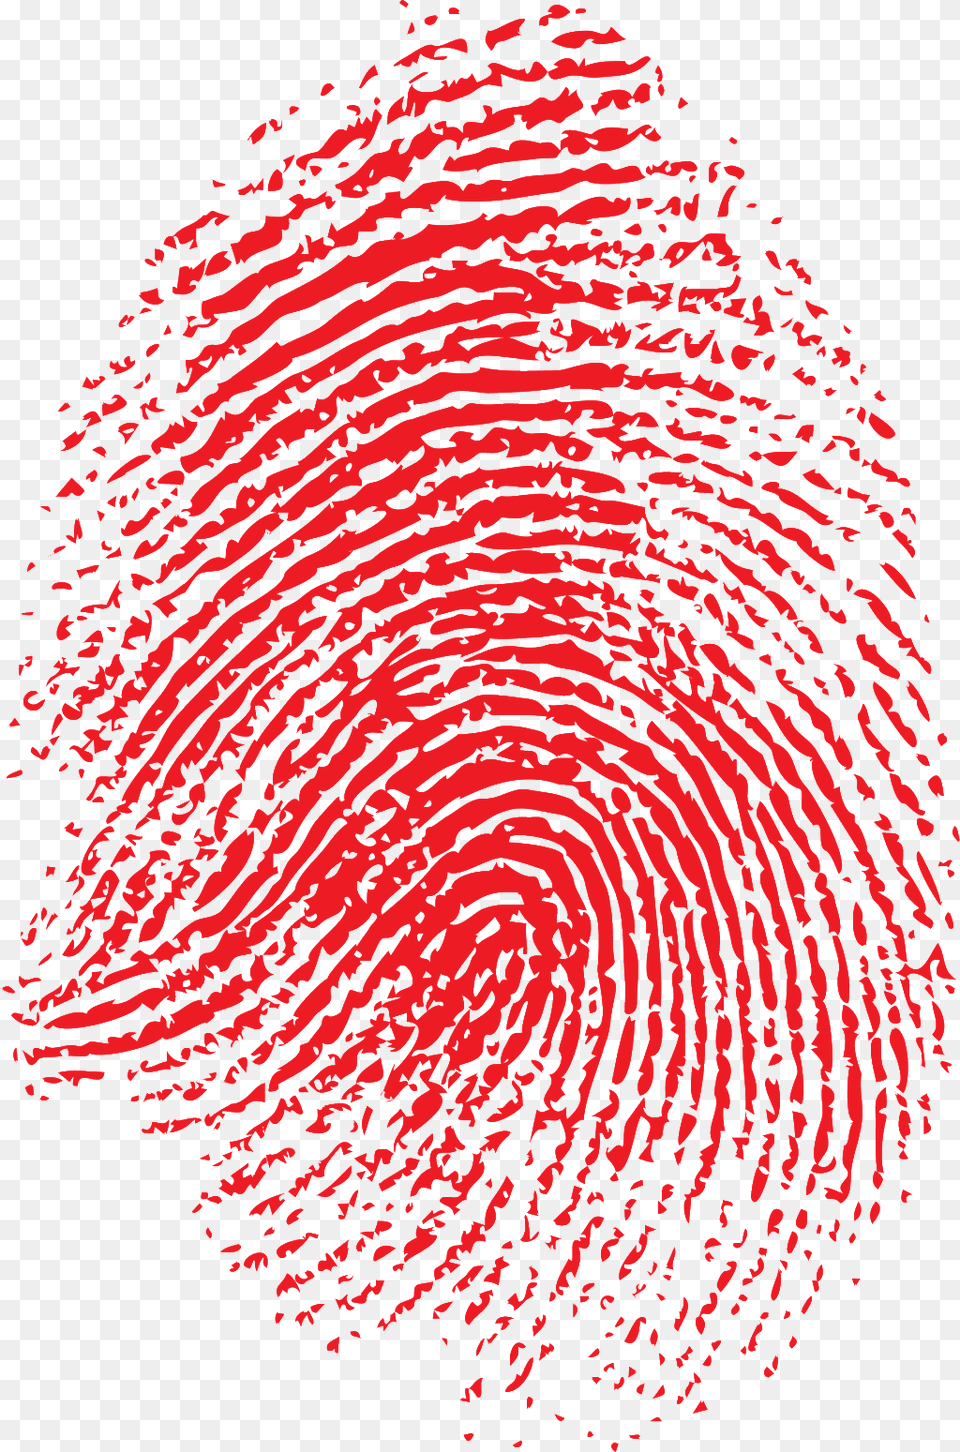 Fingerprint Handprint Transparent Source File Transparent Bloody Fingerprint, Home Decor, Spiral, Smoke Pipe Png